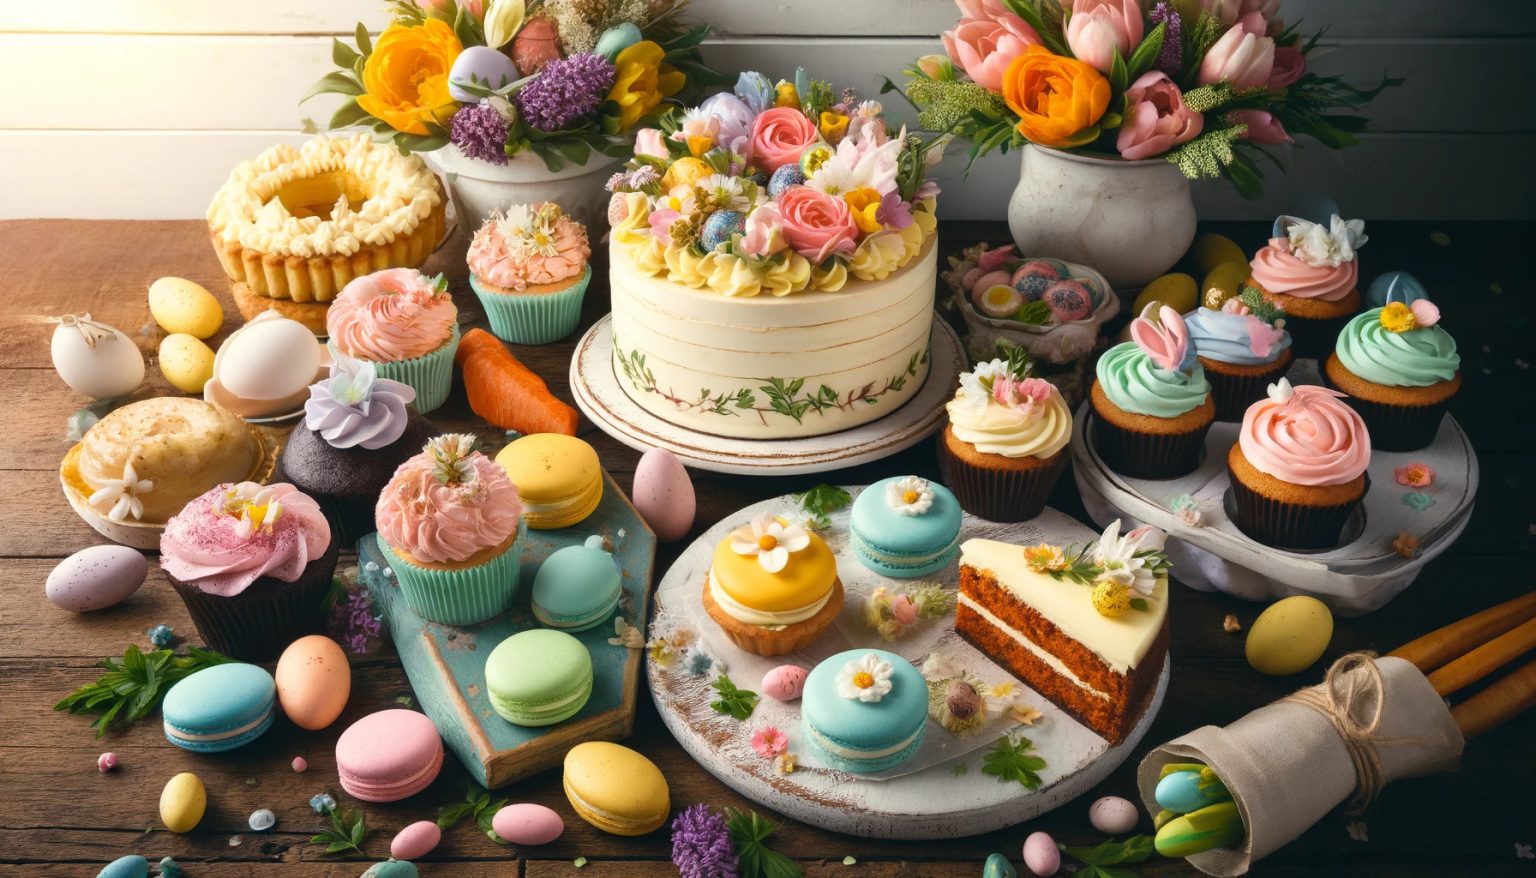 21 Springtime Dessert Recipes for Easter Celebrations - Recipes.net